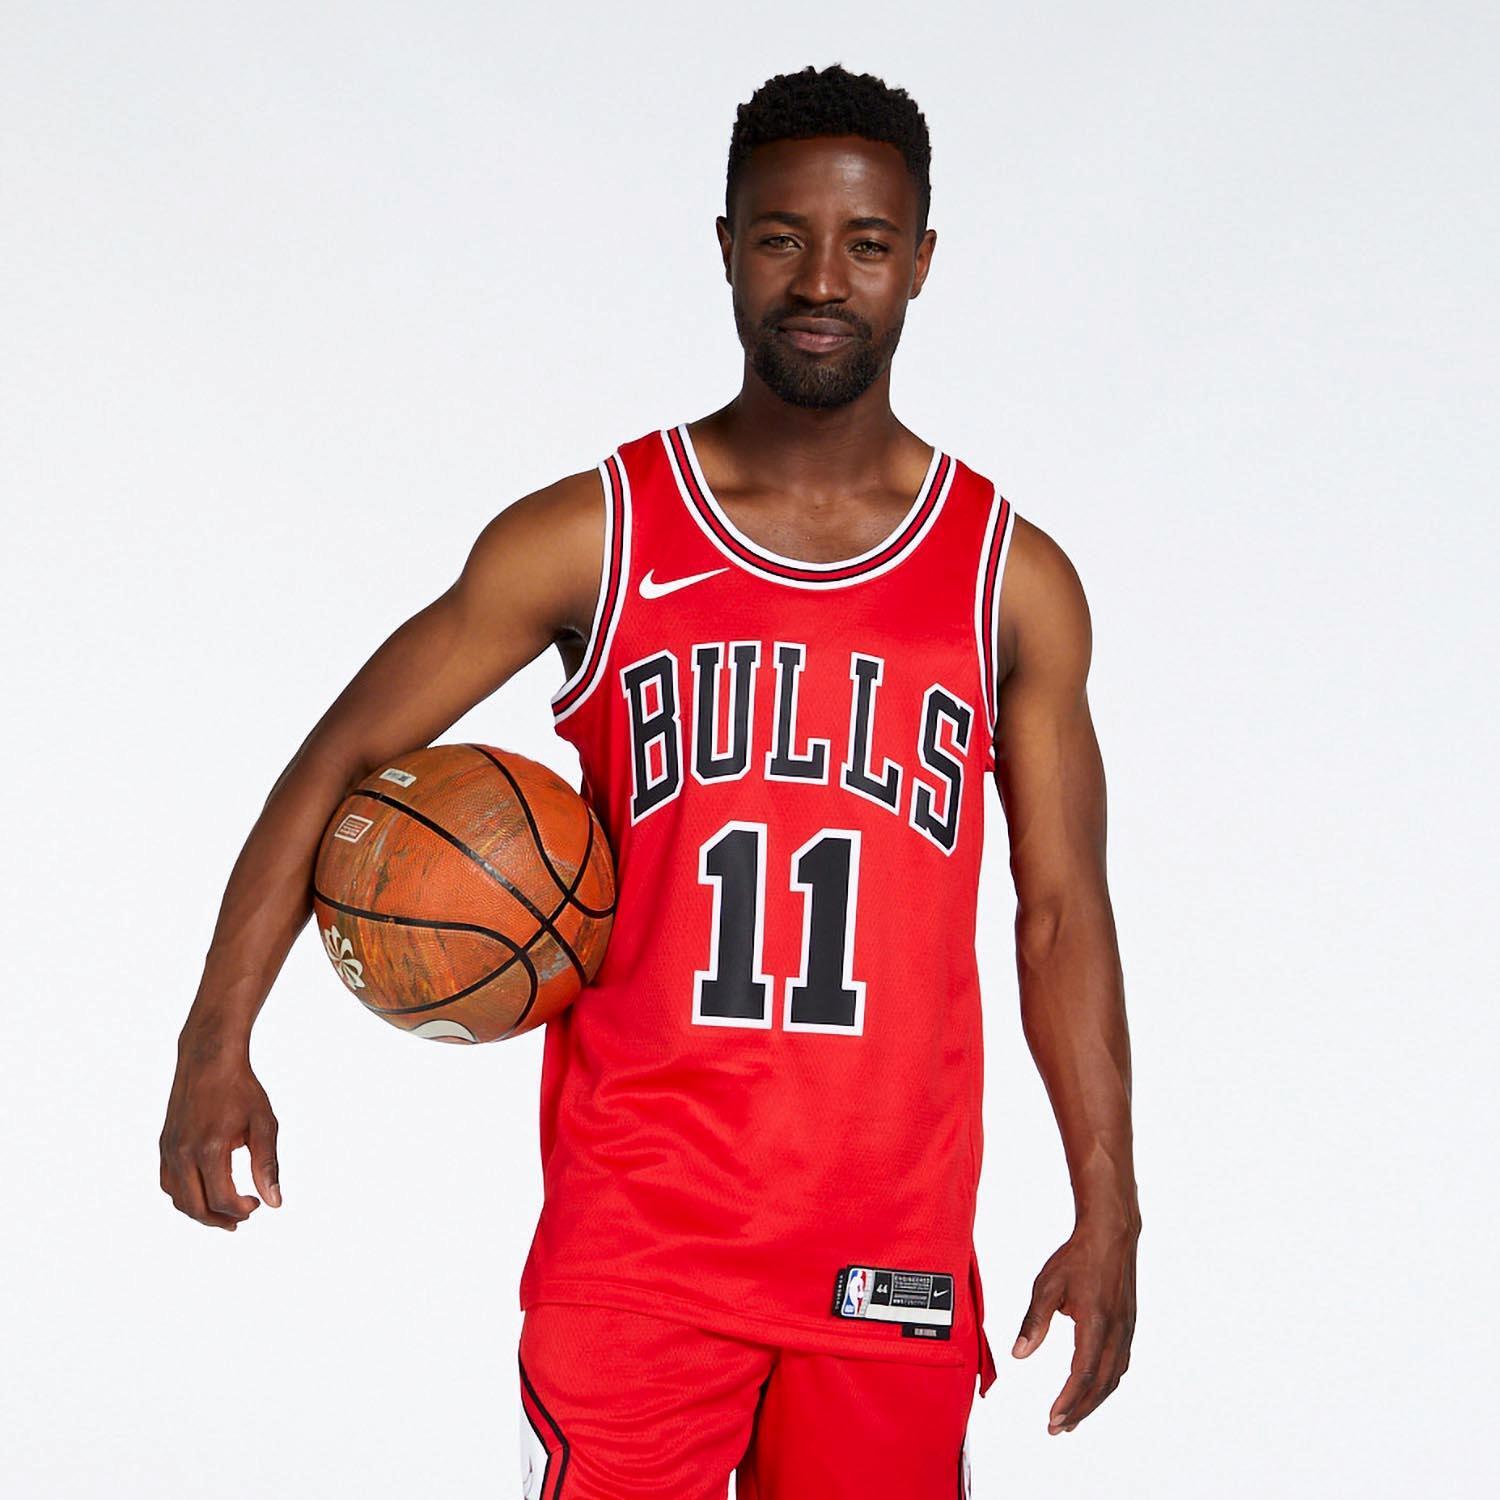 Chicago Bulls Camiseta Nike de la NBA - Hombre. Nike ES